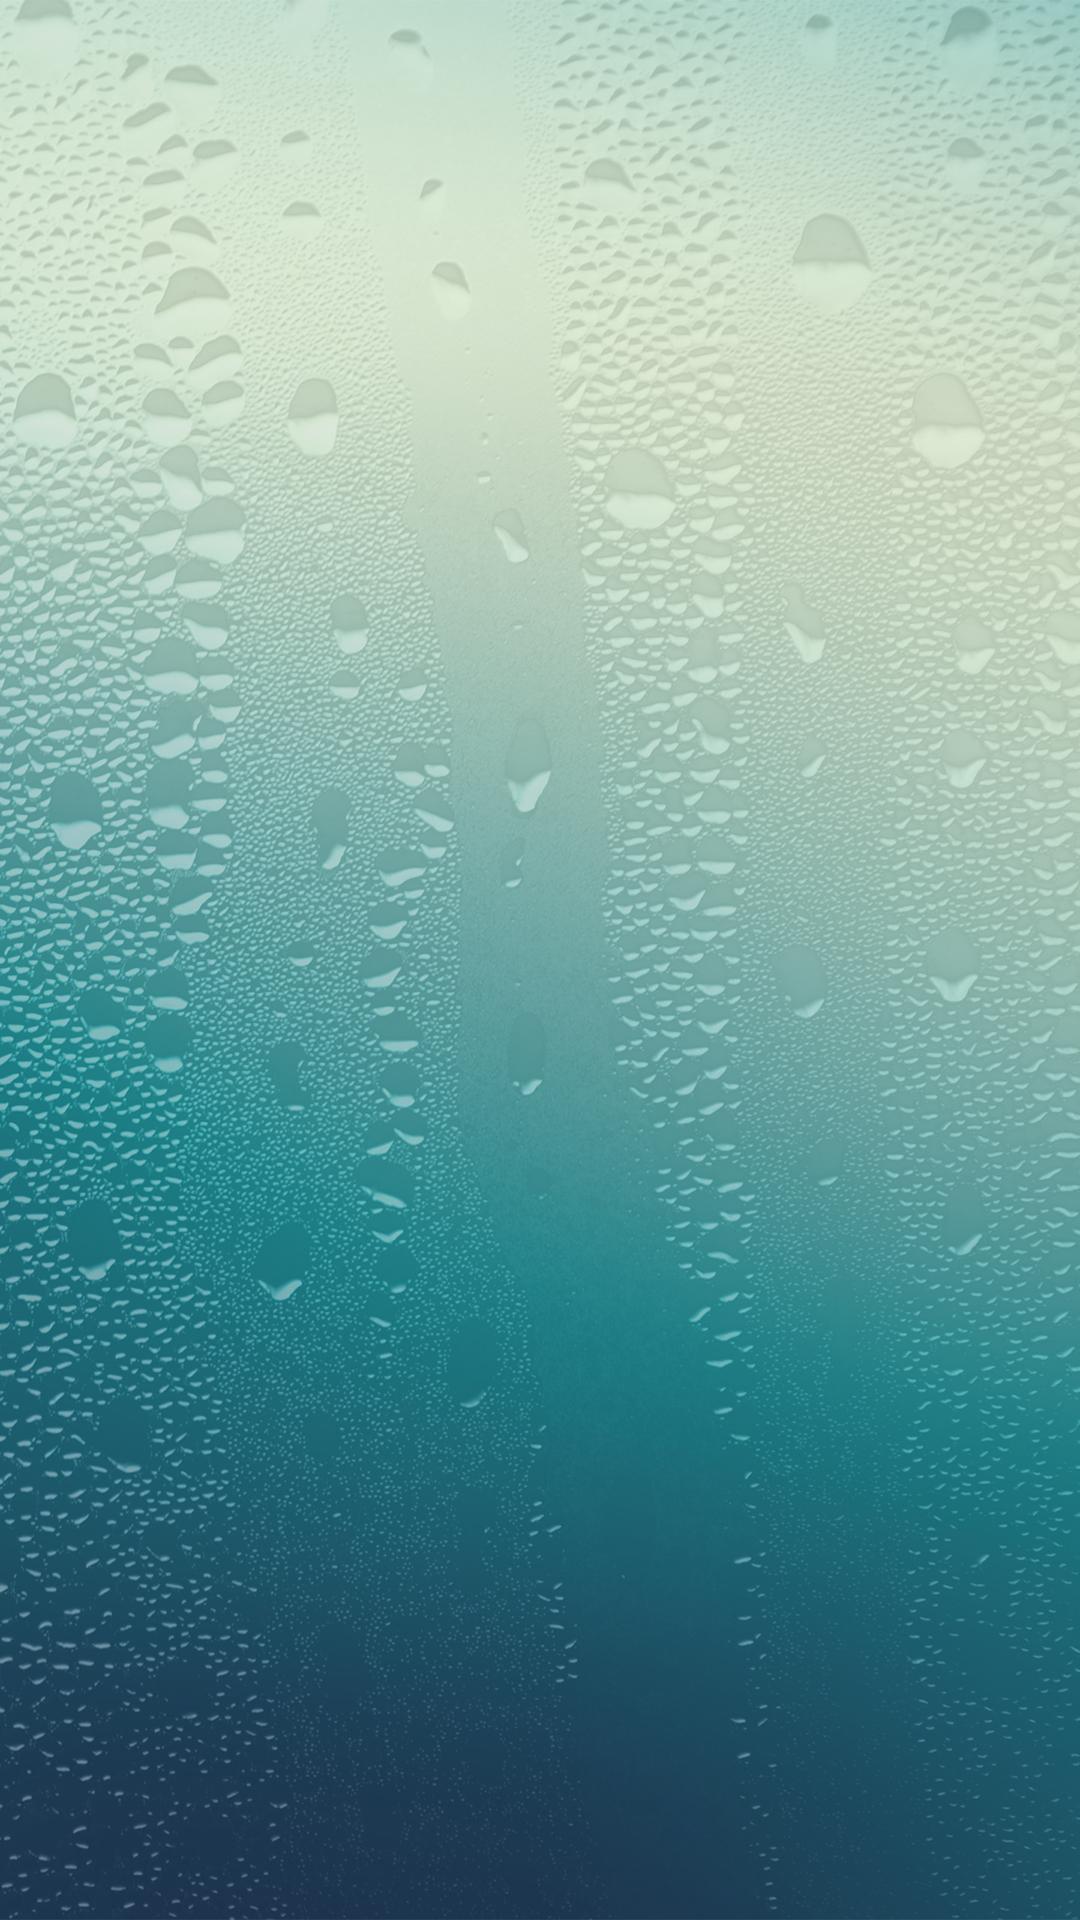 iPhone Water Drop Wallpaper